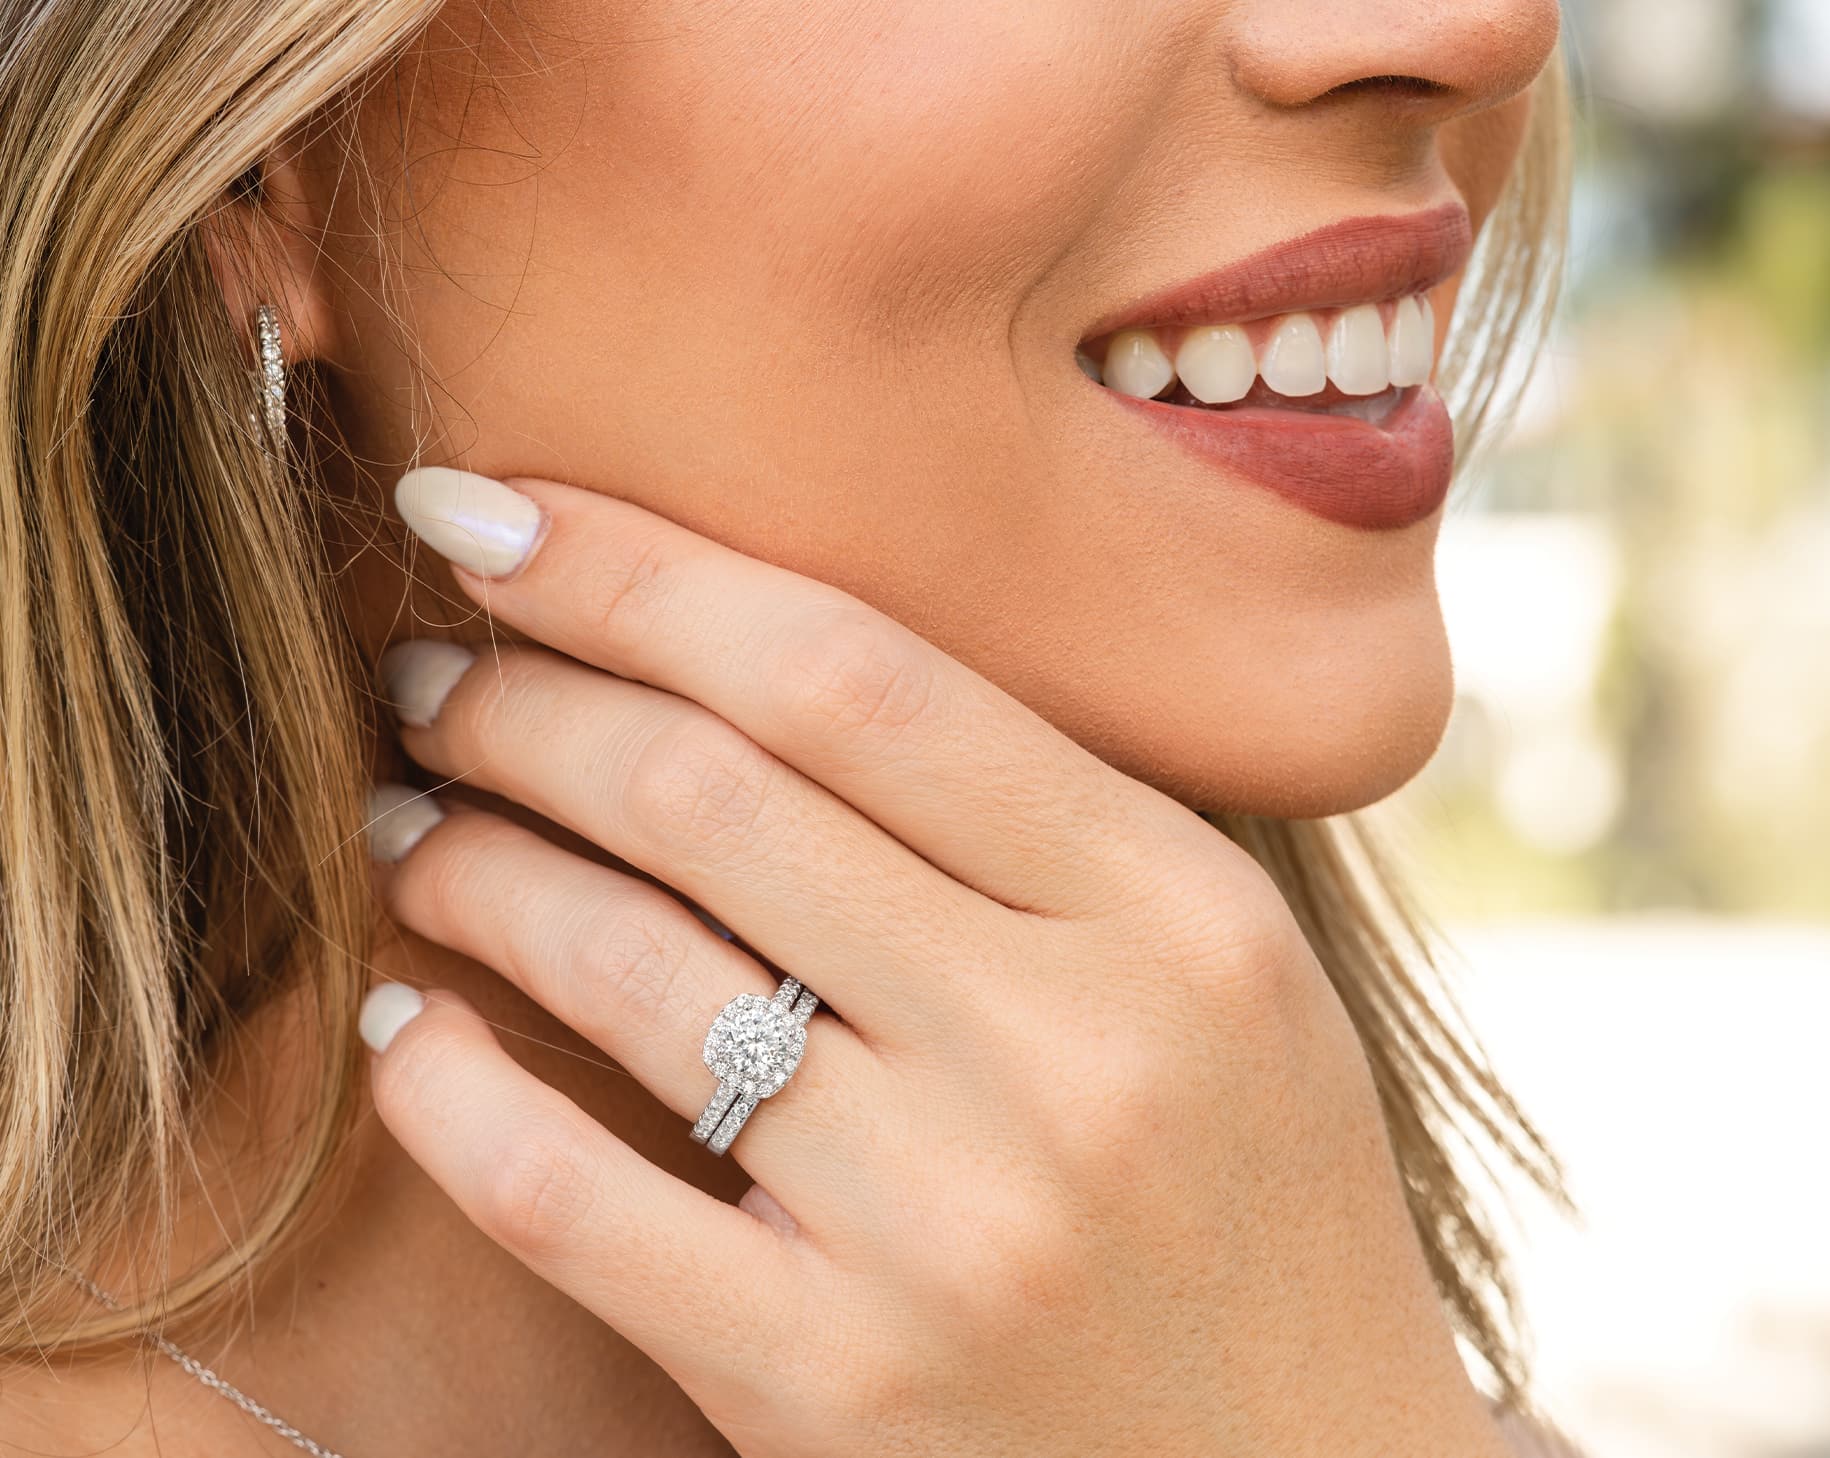 woman wearing silver wedding ring set